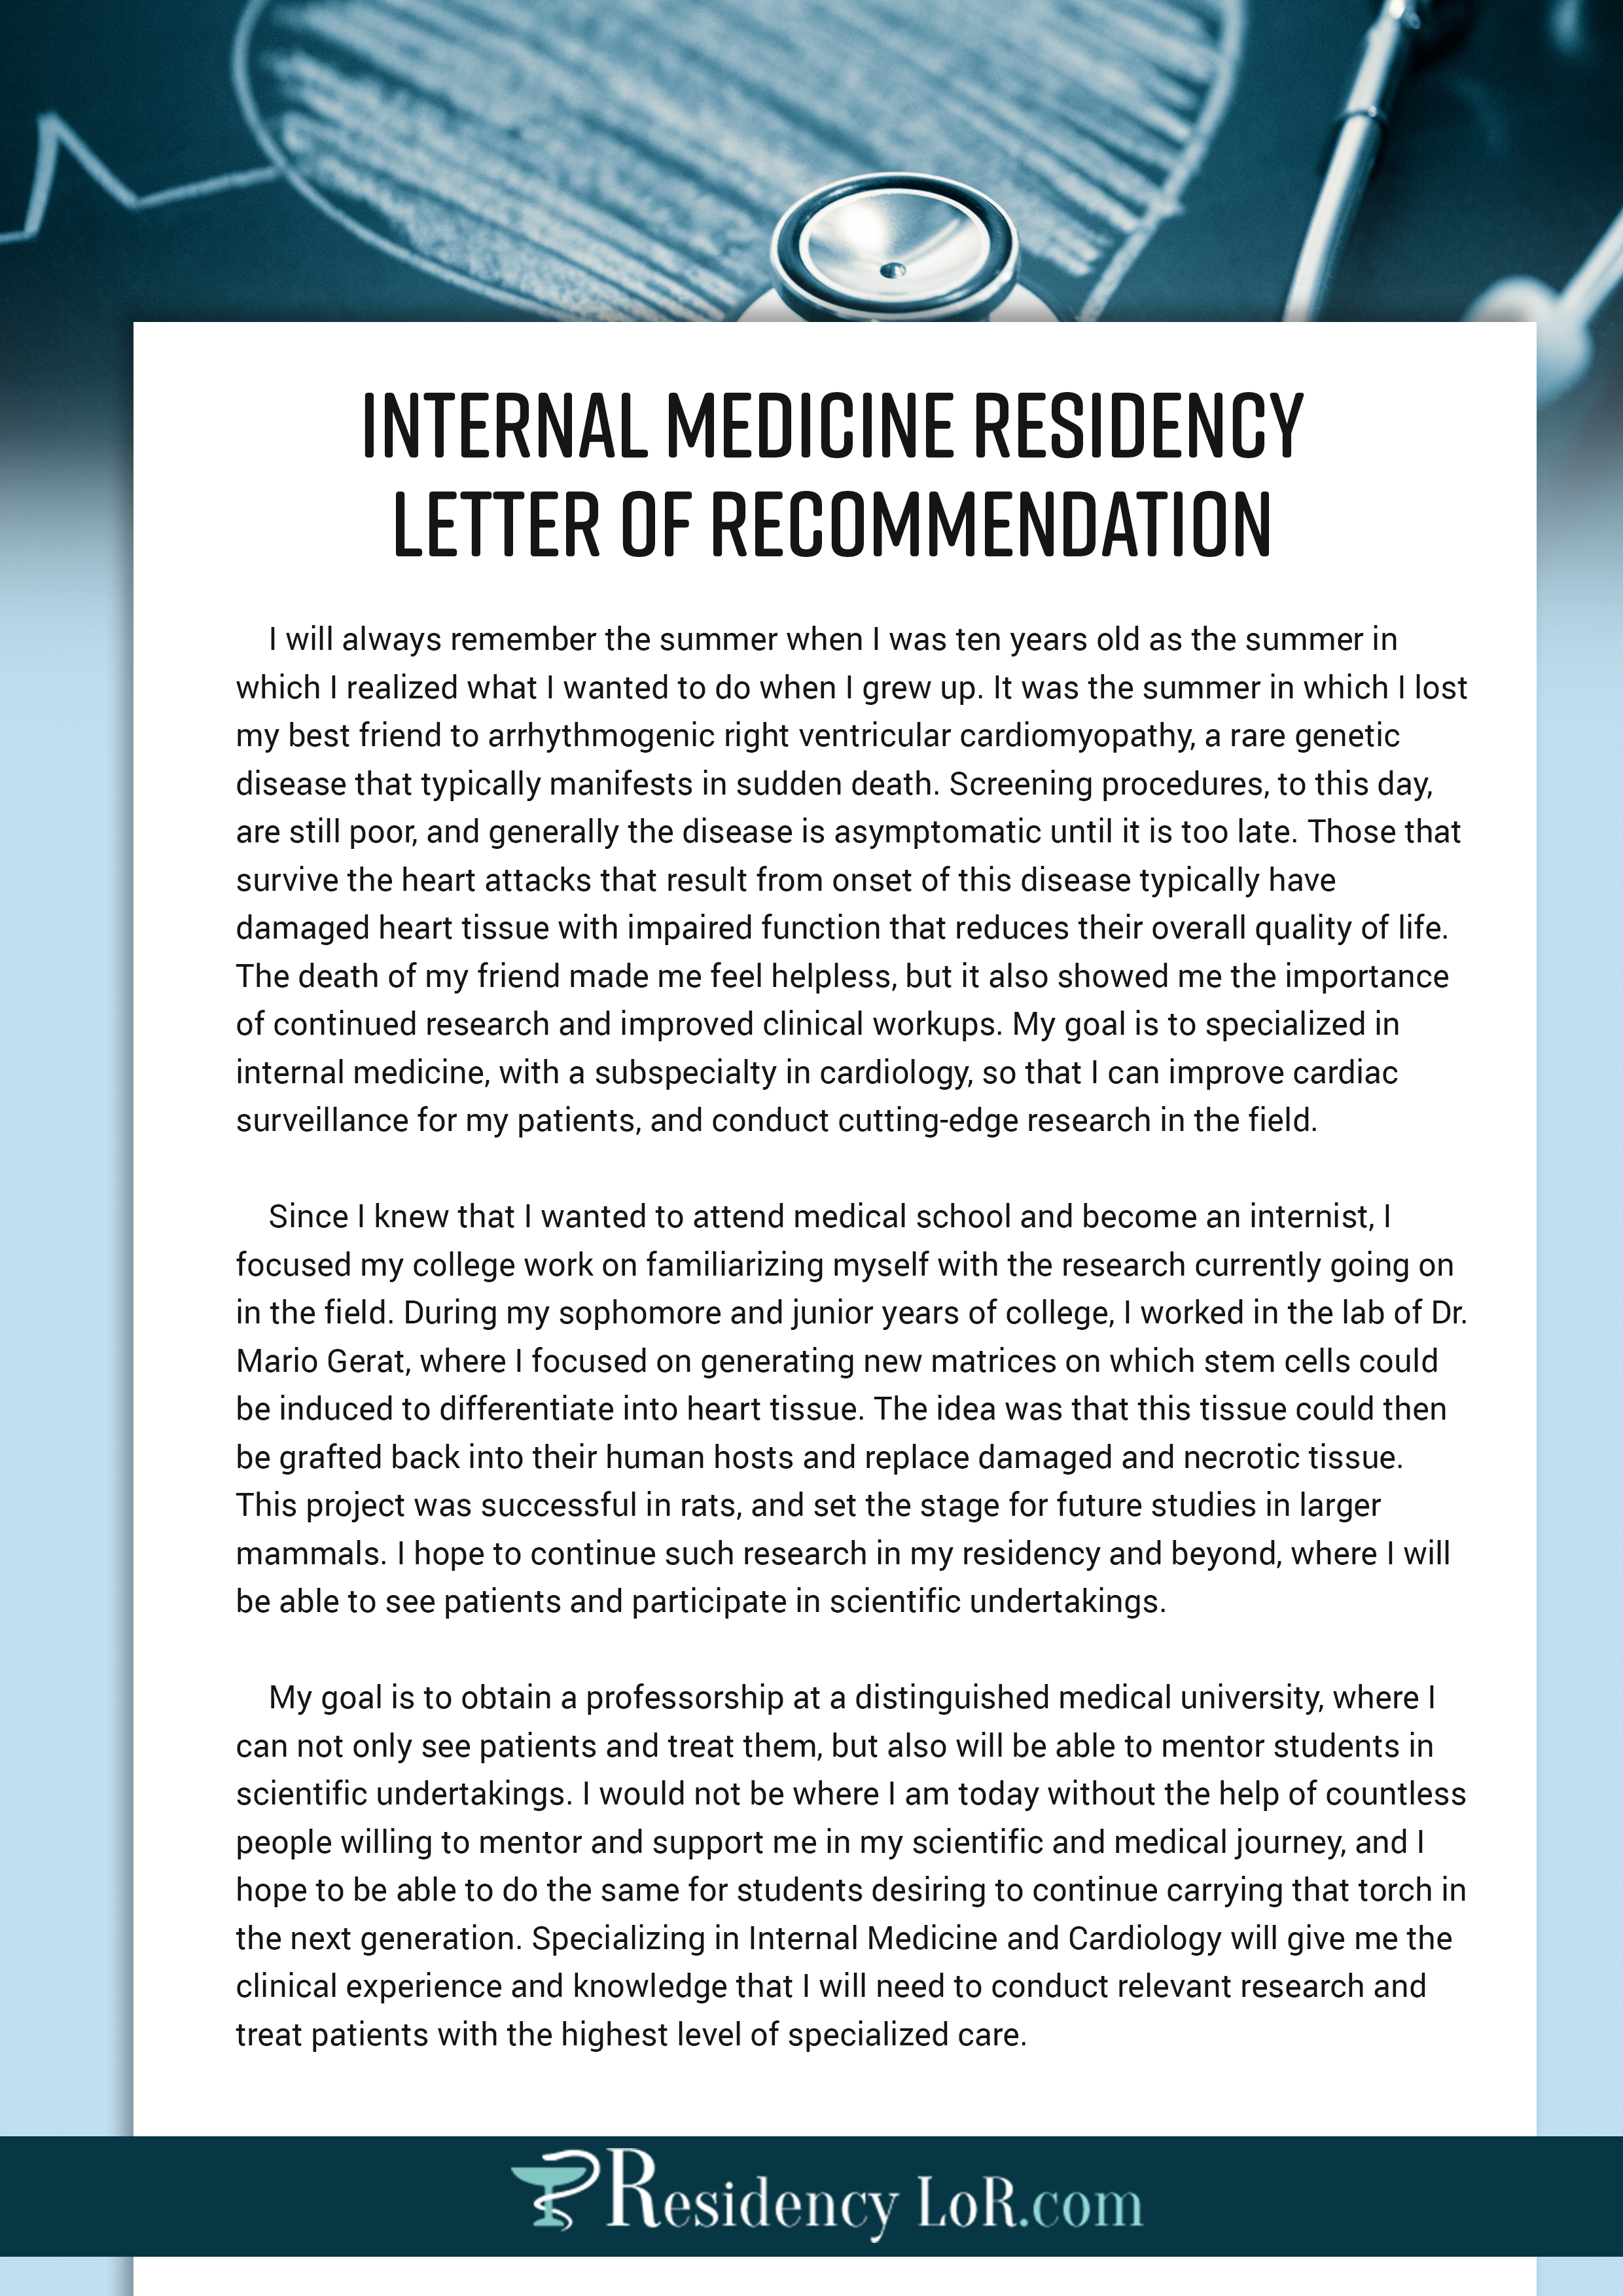 Internal medicine residency application essay